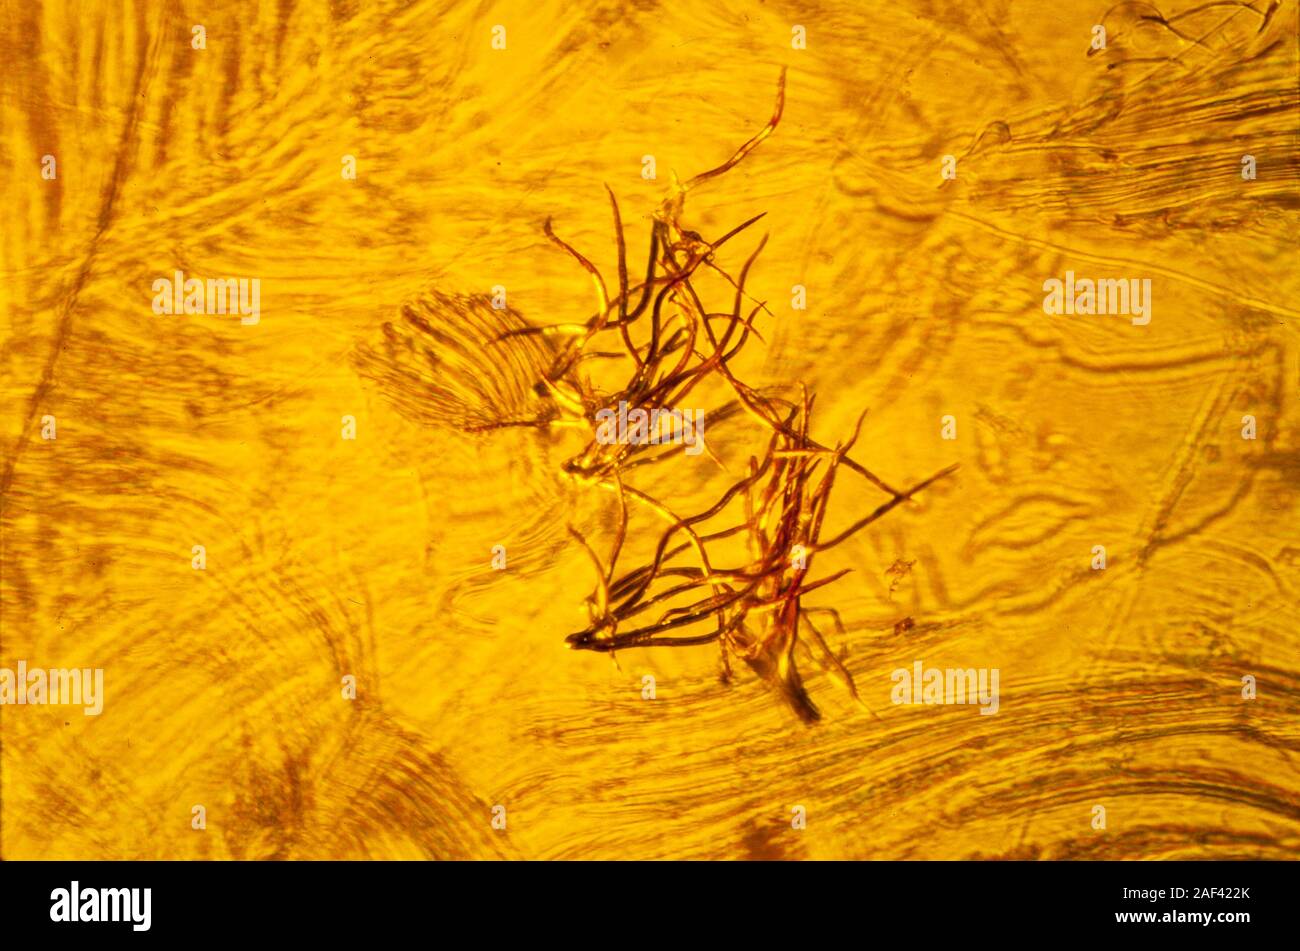 El ámbar báltico, 35-40 millones de años, el vello de undr una hoja de roble, Alta Vista de macros. Foto de stock